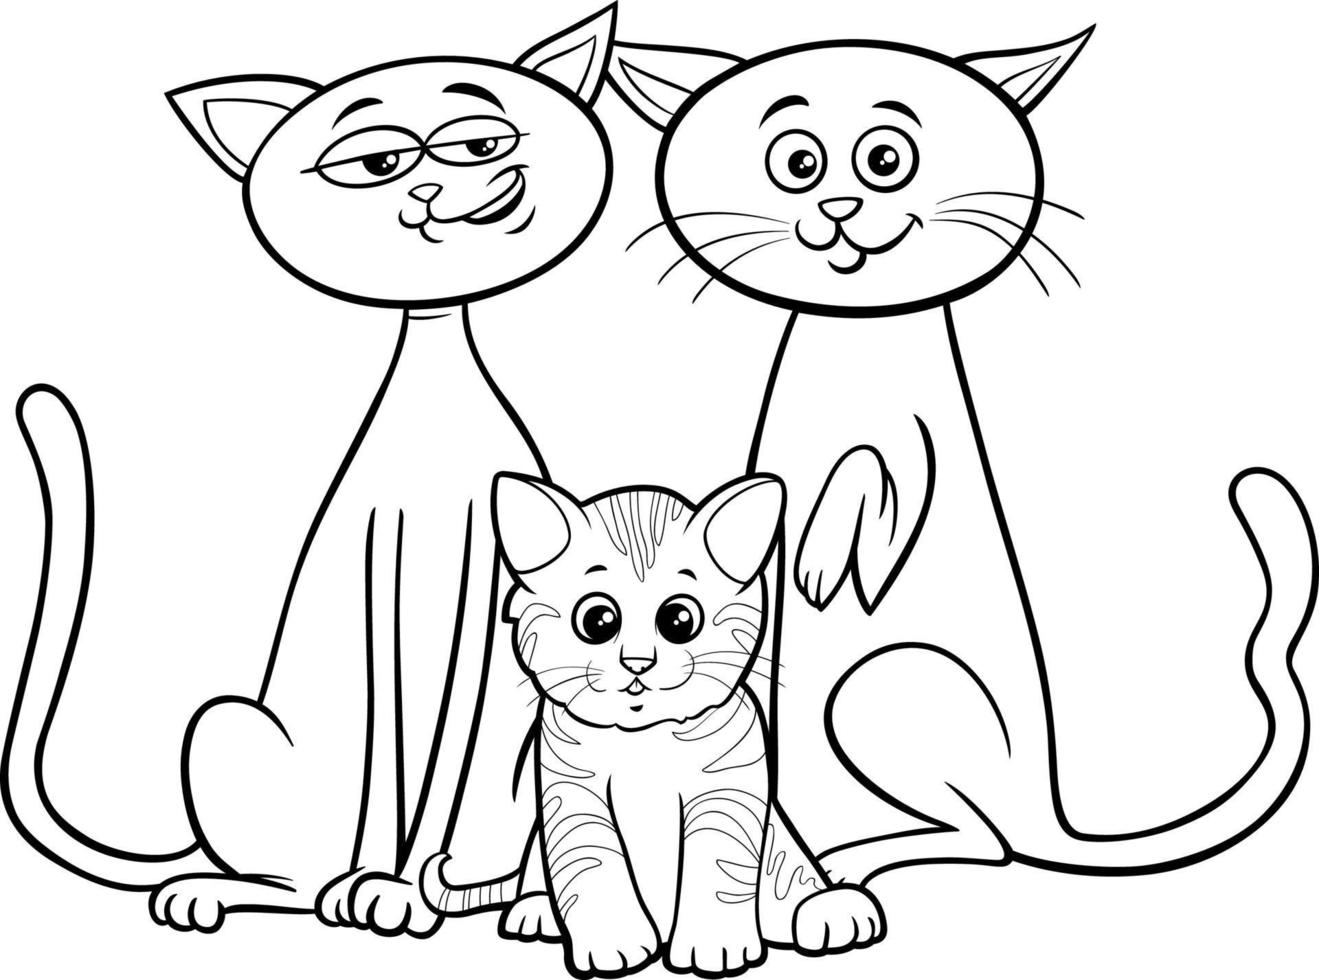 famiglia del gatto del fumetto con la pagina del libro da colorare del gattino vettore